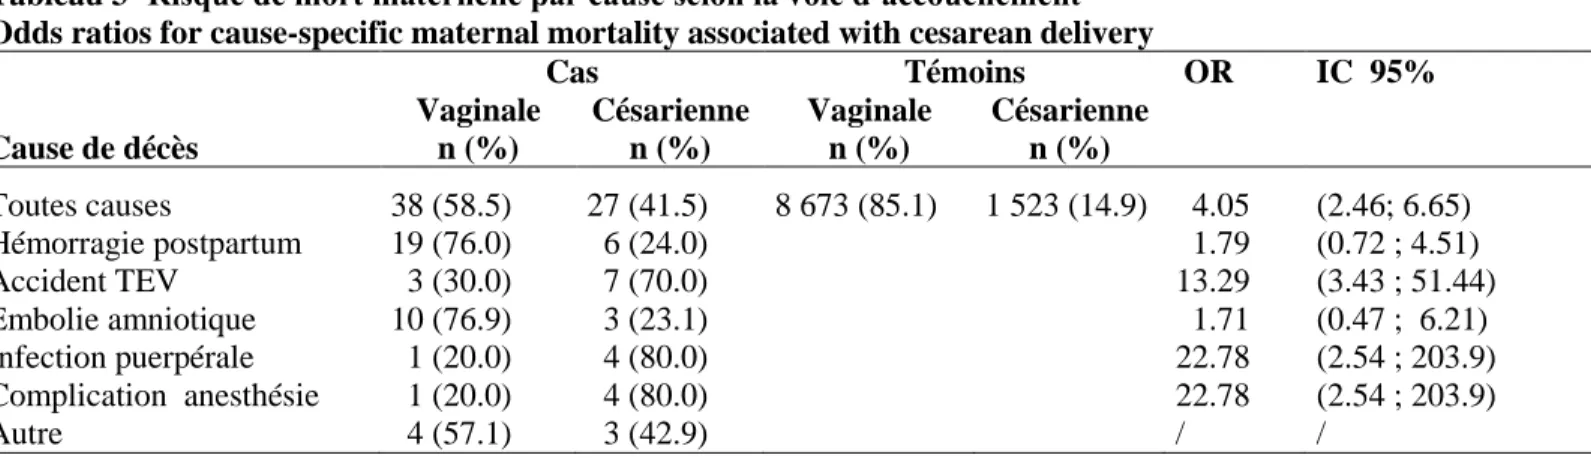 Tableau 3- Risque de mort maternelle par cause selon la voie d’accouchement  Odds ratios for cause-specific maternal mortality associated with cesarean delivery 